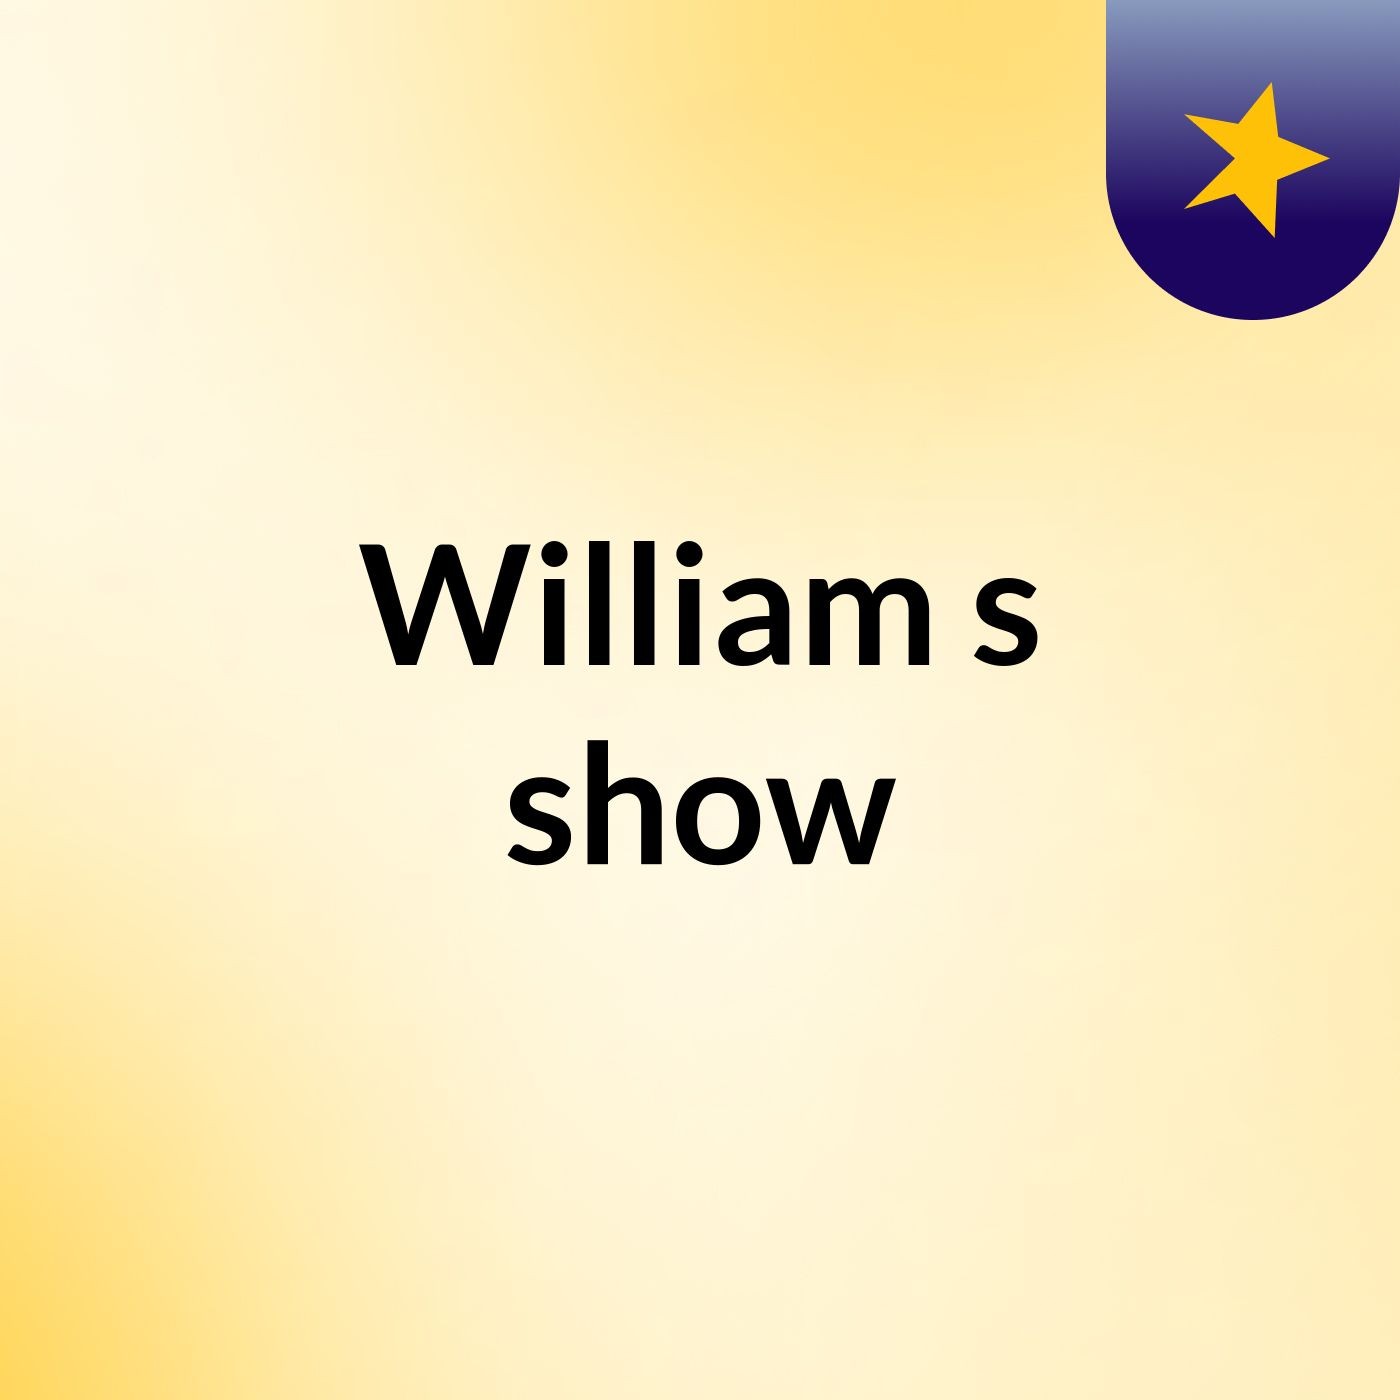 William's show